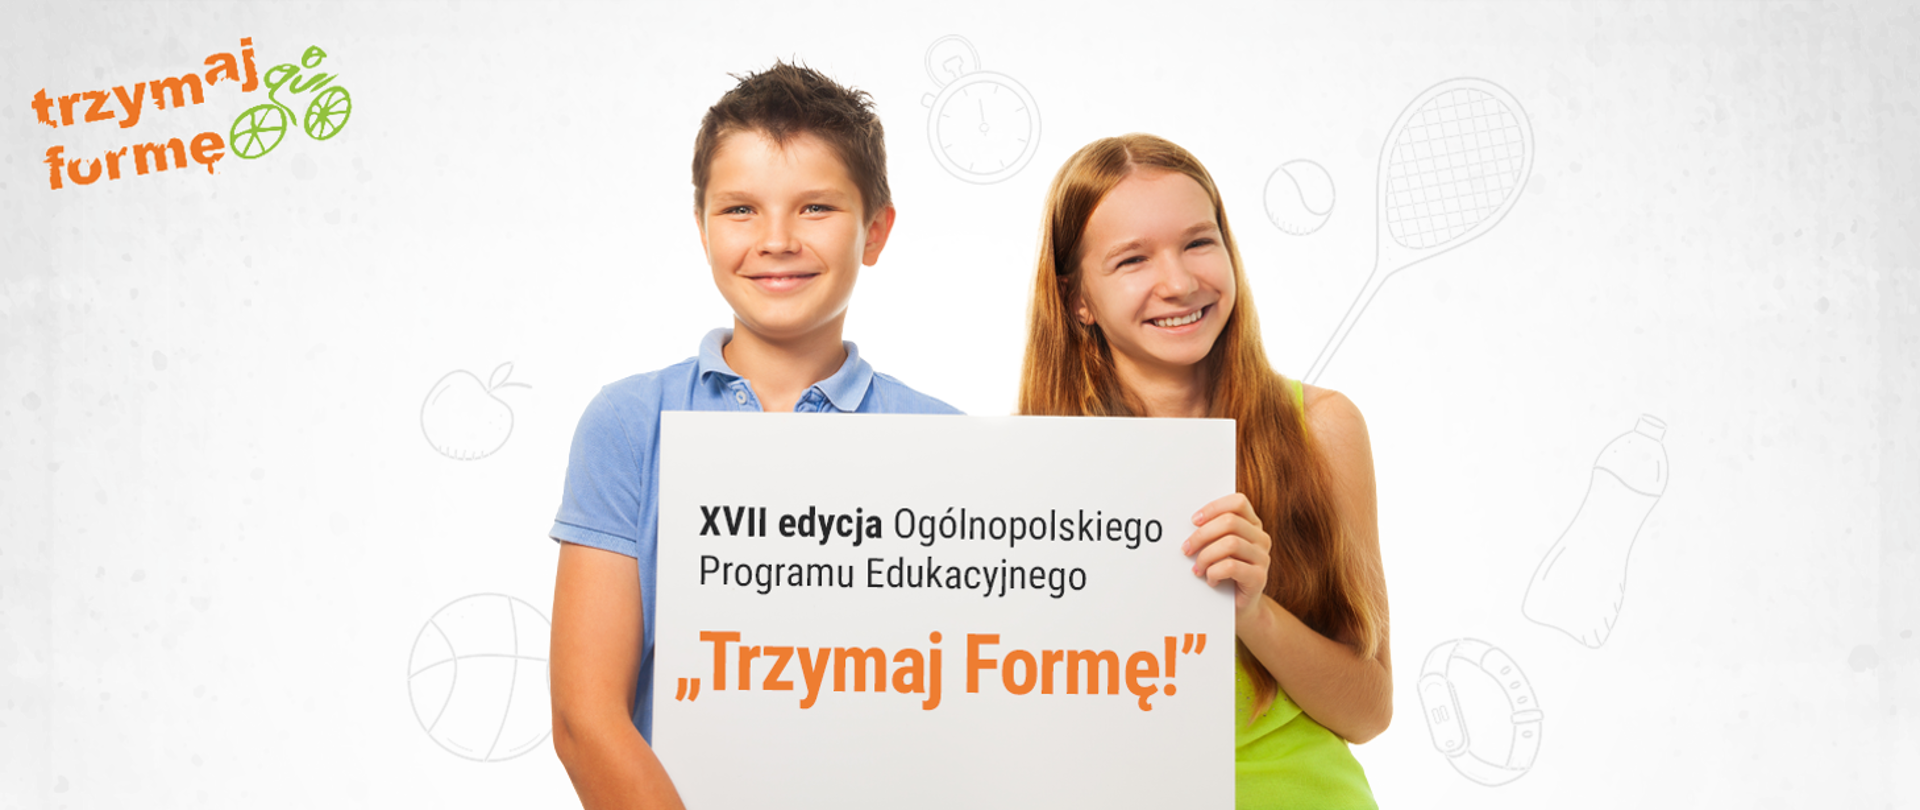 Dwójka dzieci, chłopak i dziewczyna trzymają planszę z napisem XVII edycja Ogólnopolskiego Programu Edukacyjnego "Trzymaj Formę!"